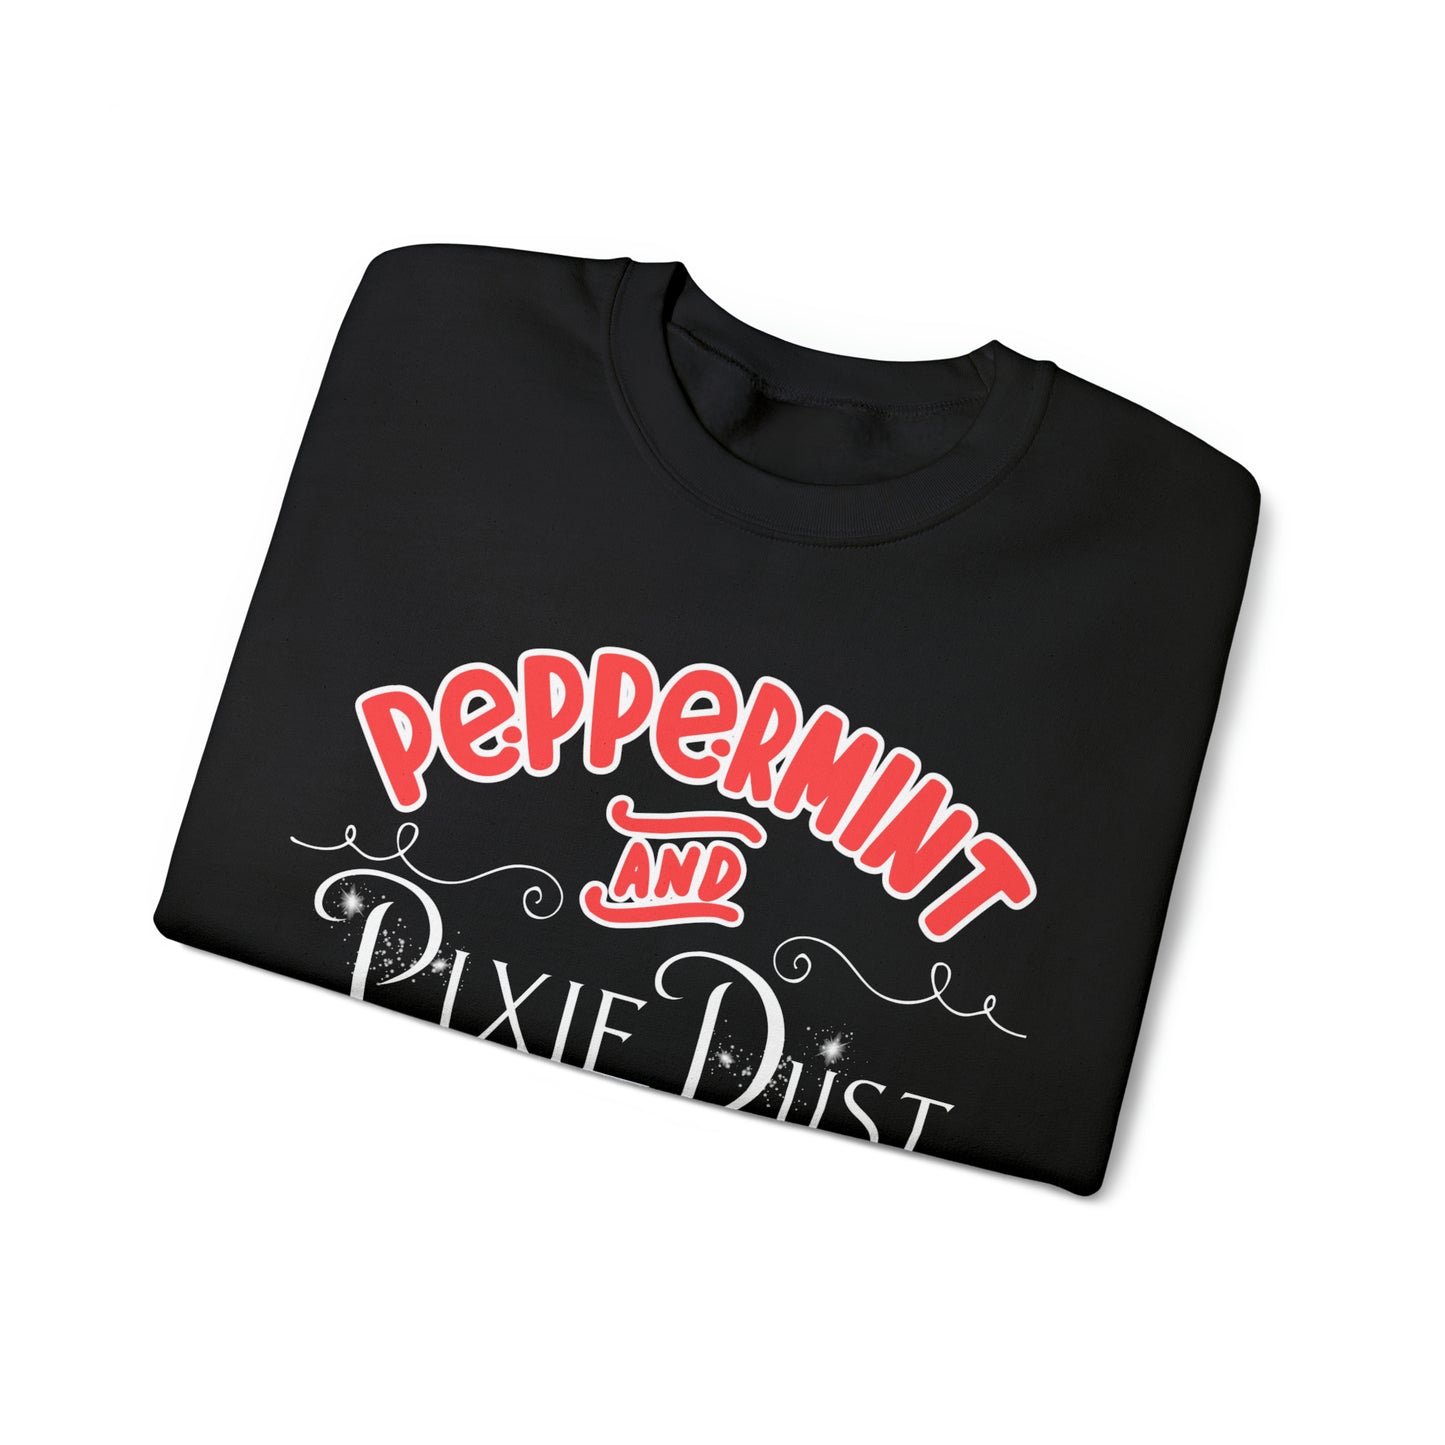 Peppermint & Pixie Dust - Crewneck